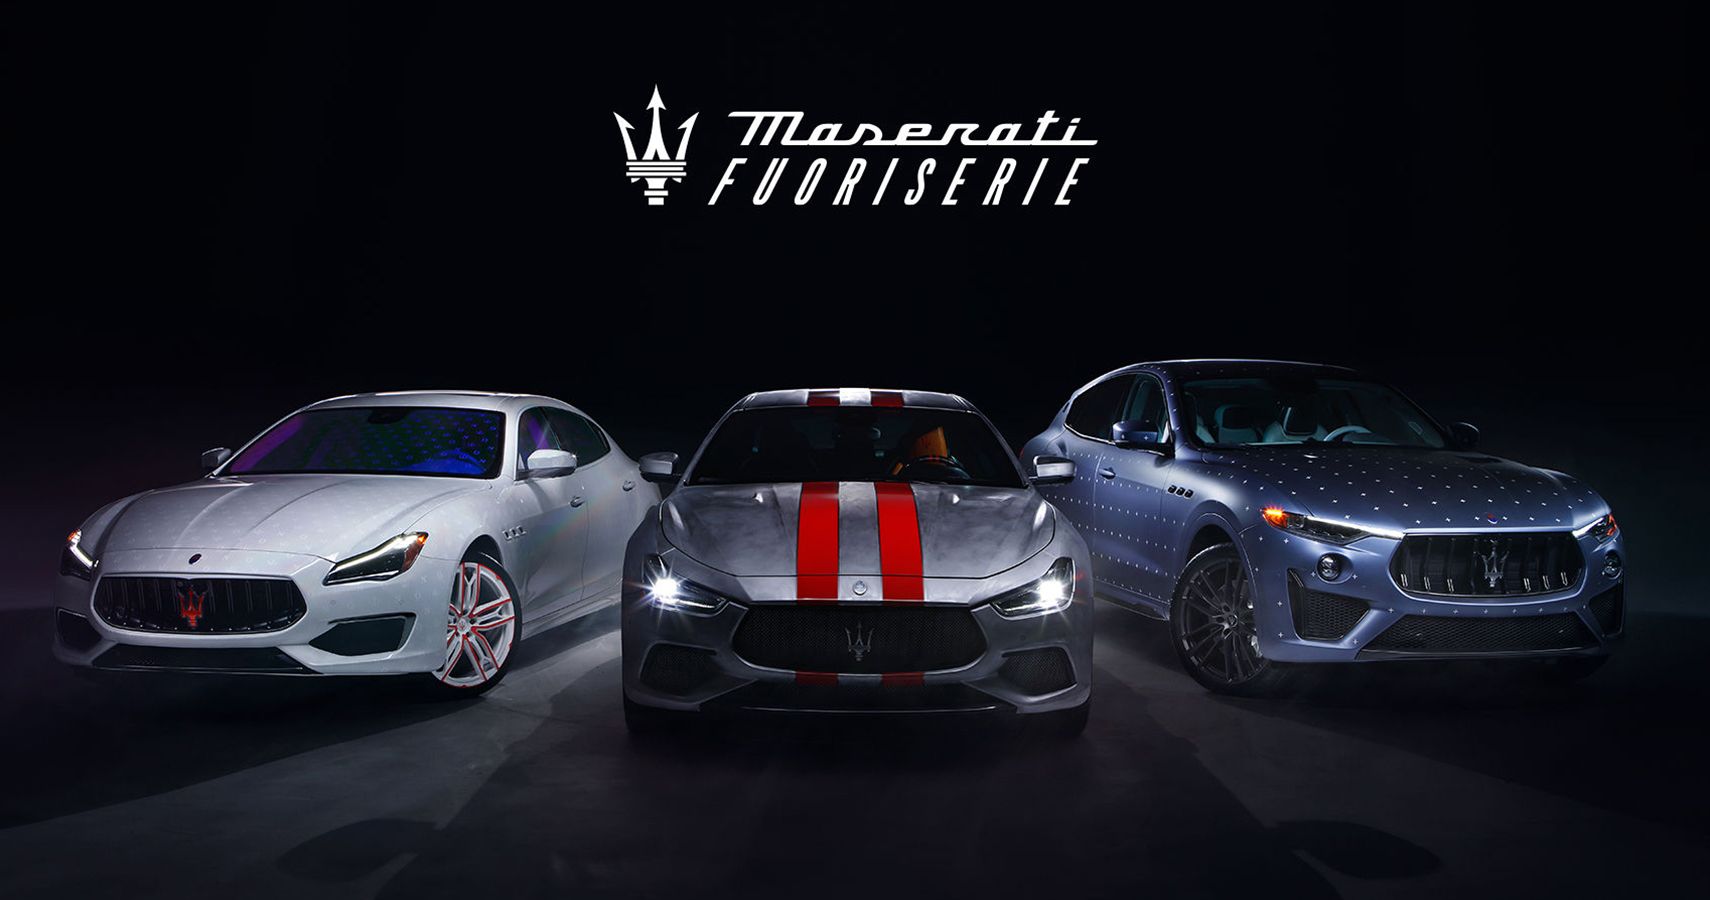 Maserati Fuoriserie program